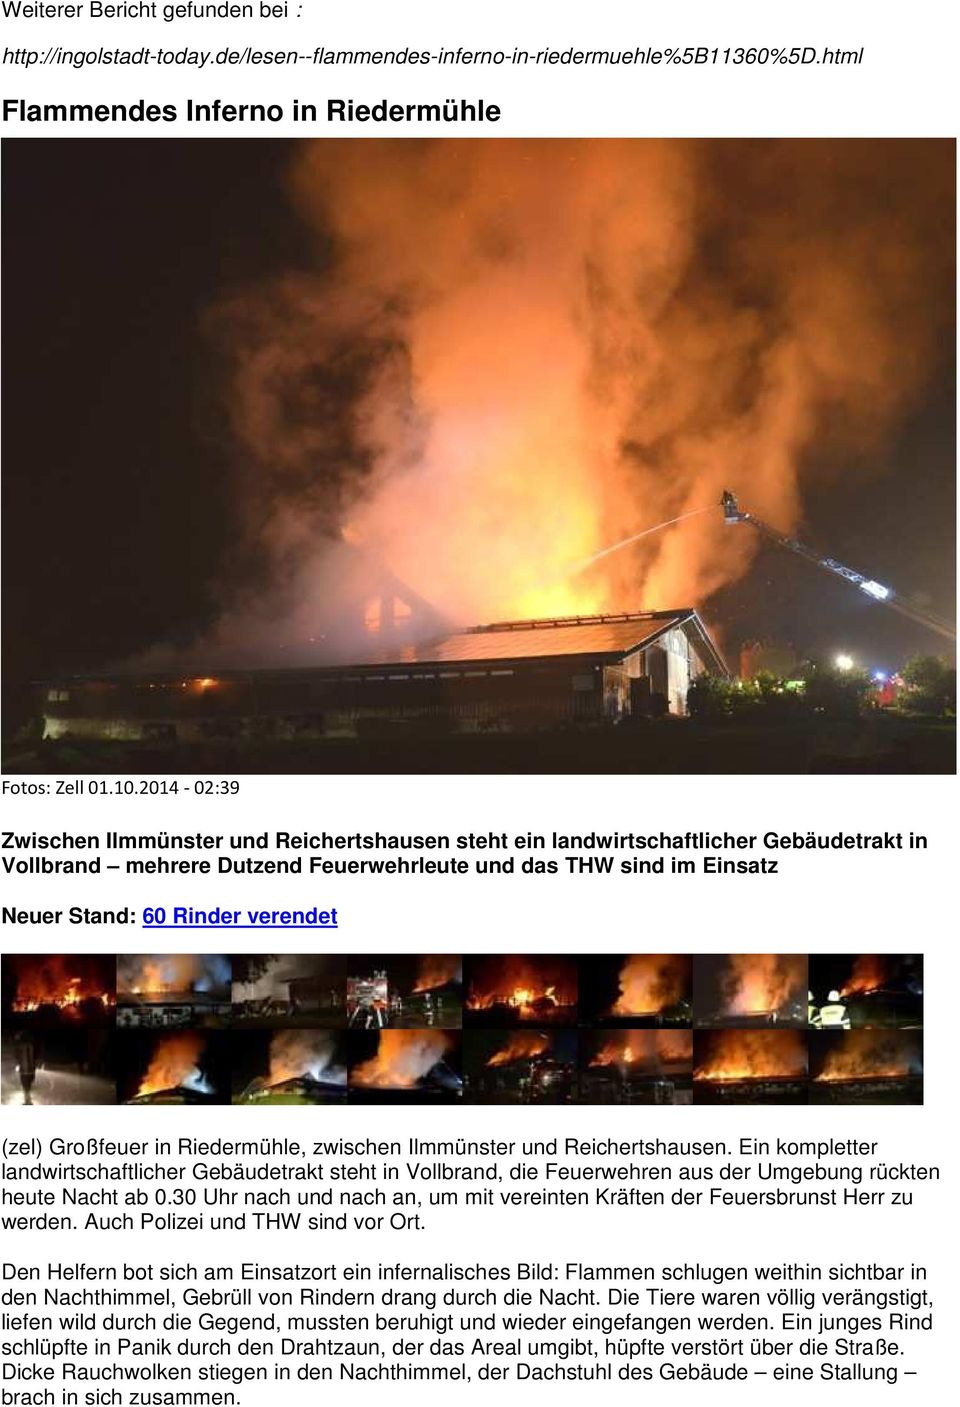 (zel) Großfeuer in Riedermühle, zwischen Ilmmünster und Reichertshausen. Ein kompletter landwirtschaftlicher Gebäudetrakt steht in Vollbrand, die Feuerwehren aus der Umgebung rückten heute Nacht ab 0.